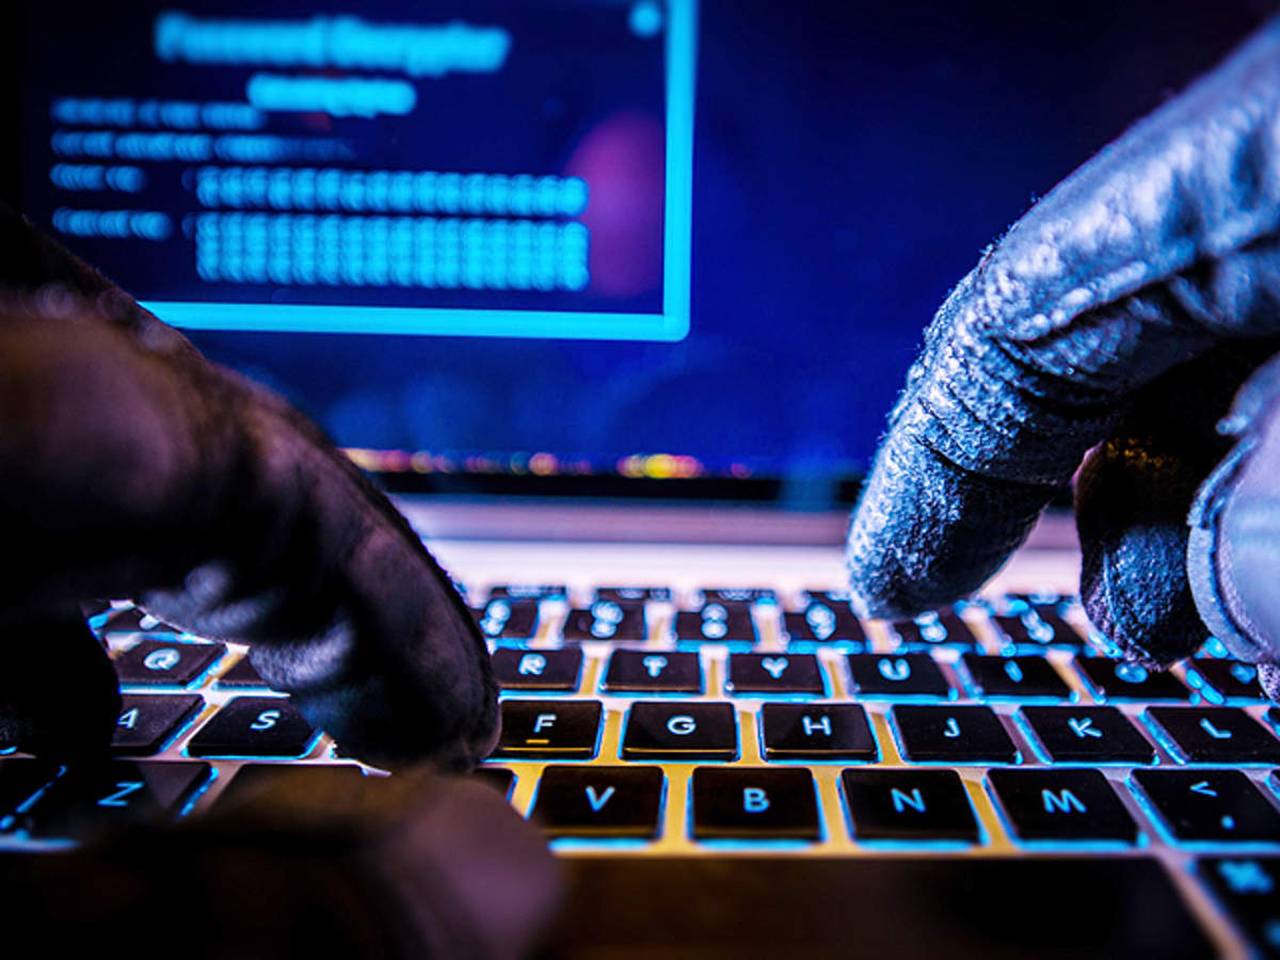 Hackerii au utilizat anul trecut scrisori spam și pagini de phising ce aveau ca subiect COVID-19